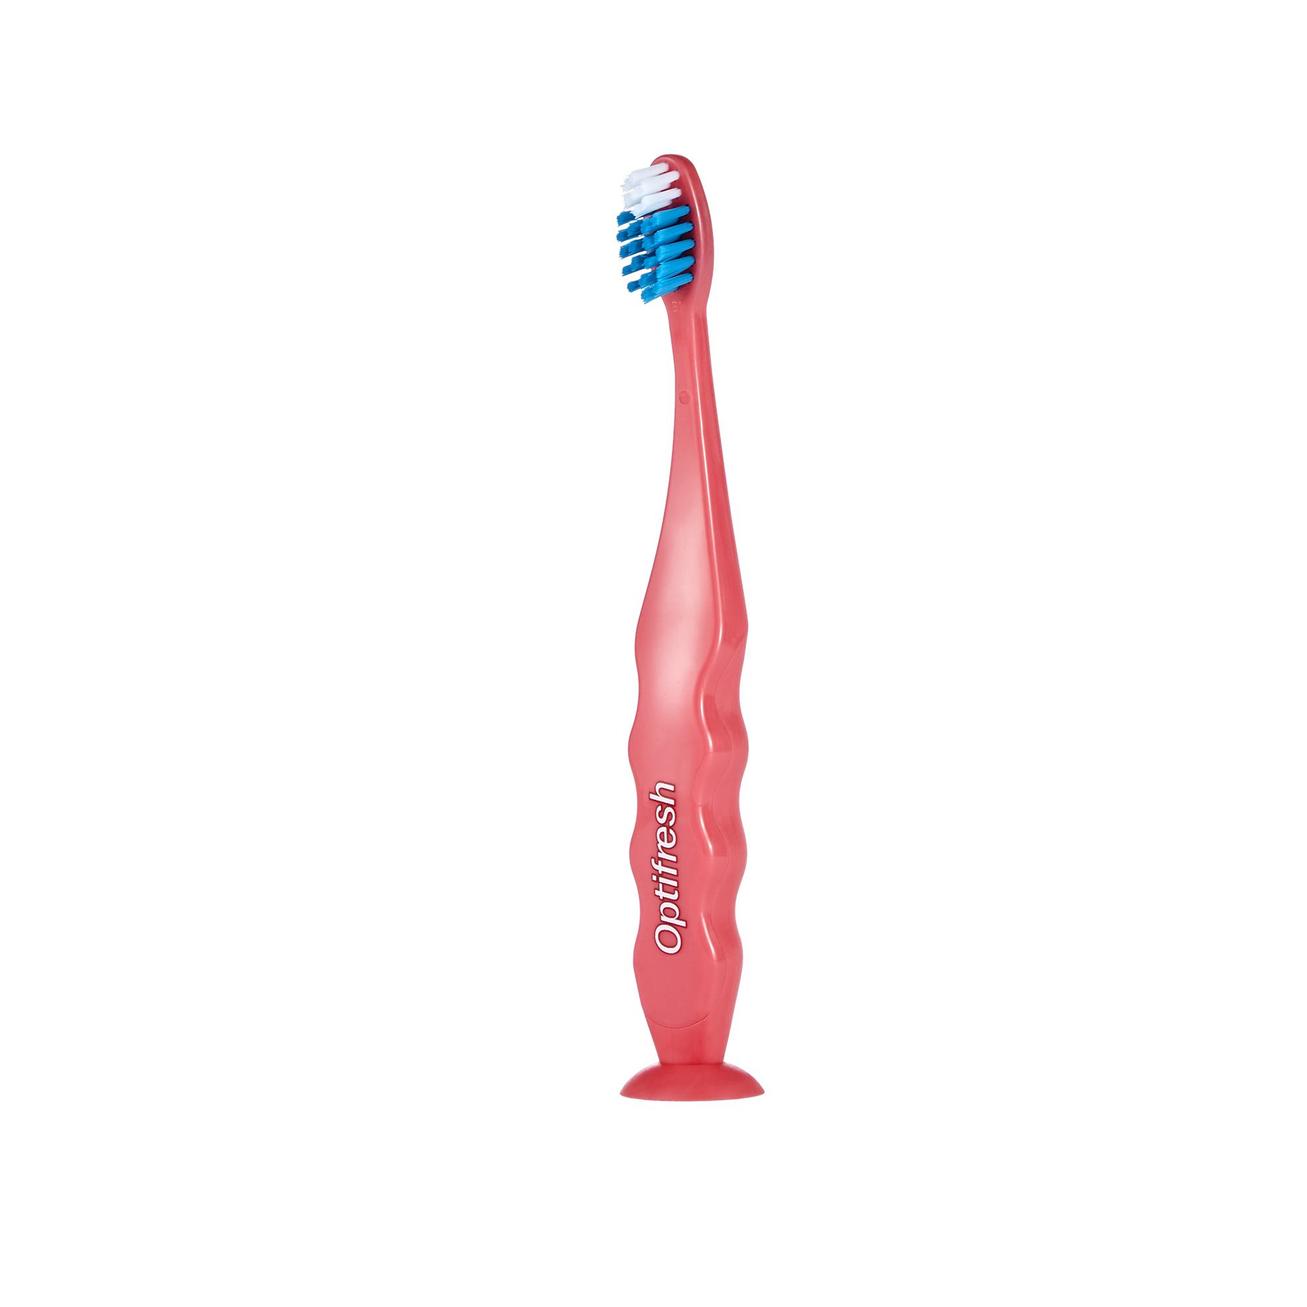 Aanbieding van Kids Soft Toothbrush - Pink voor 2,99€ bij Oriflame